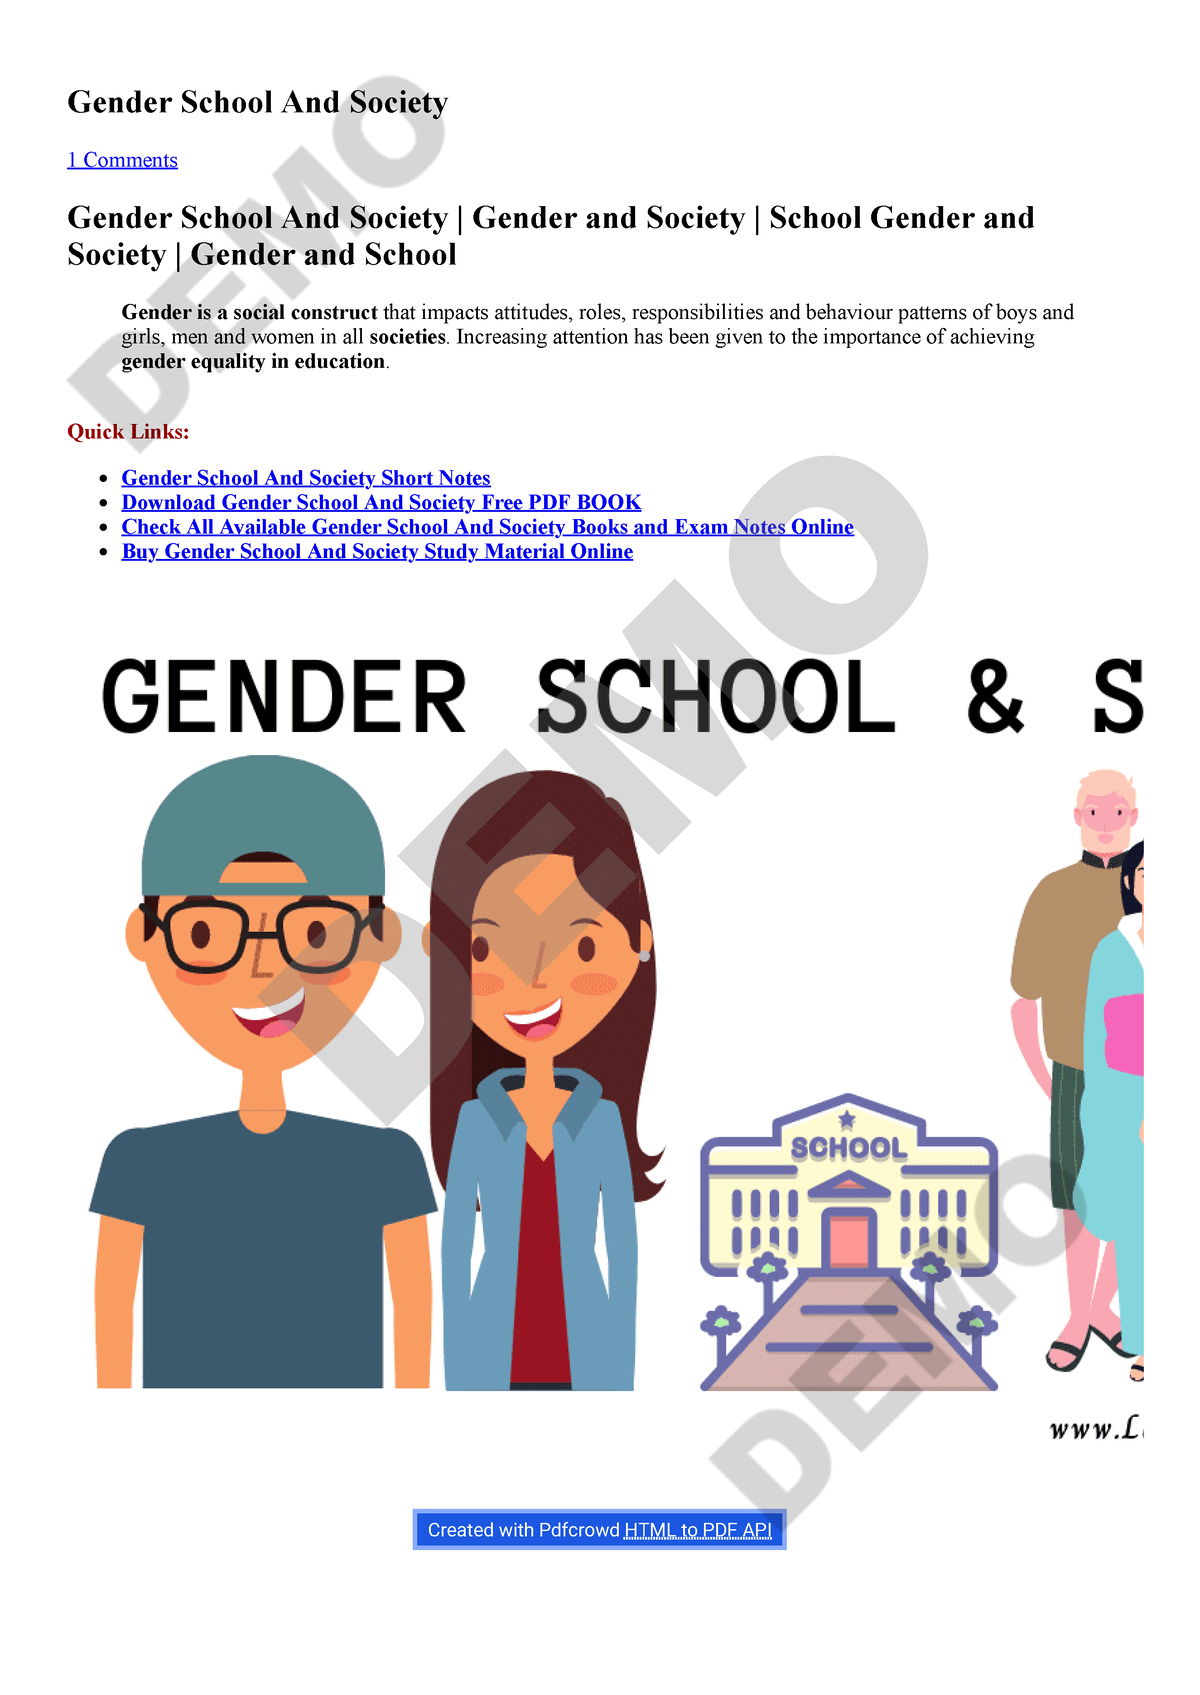 Gender School And Social Gender School And Society 1 Comments Gender School And Society 